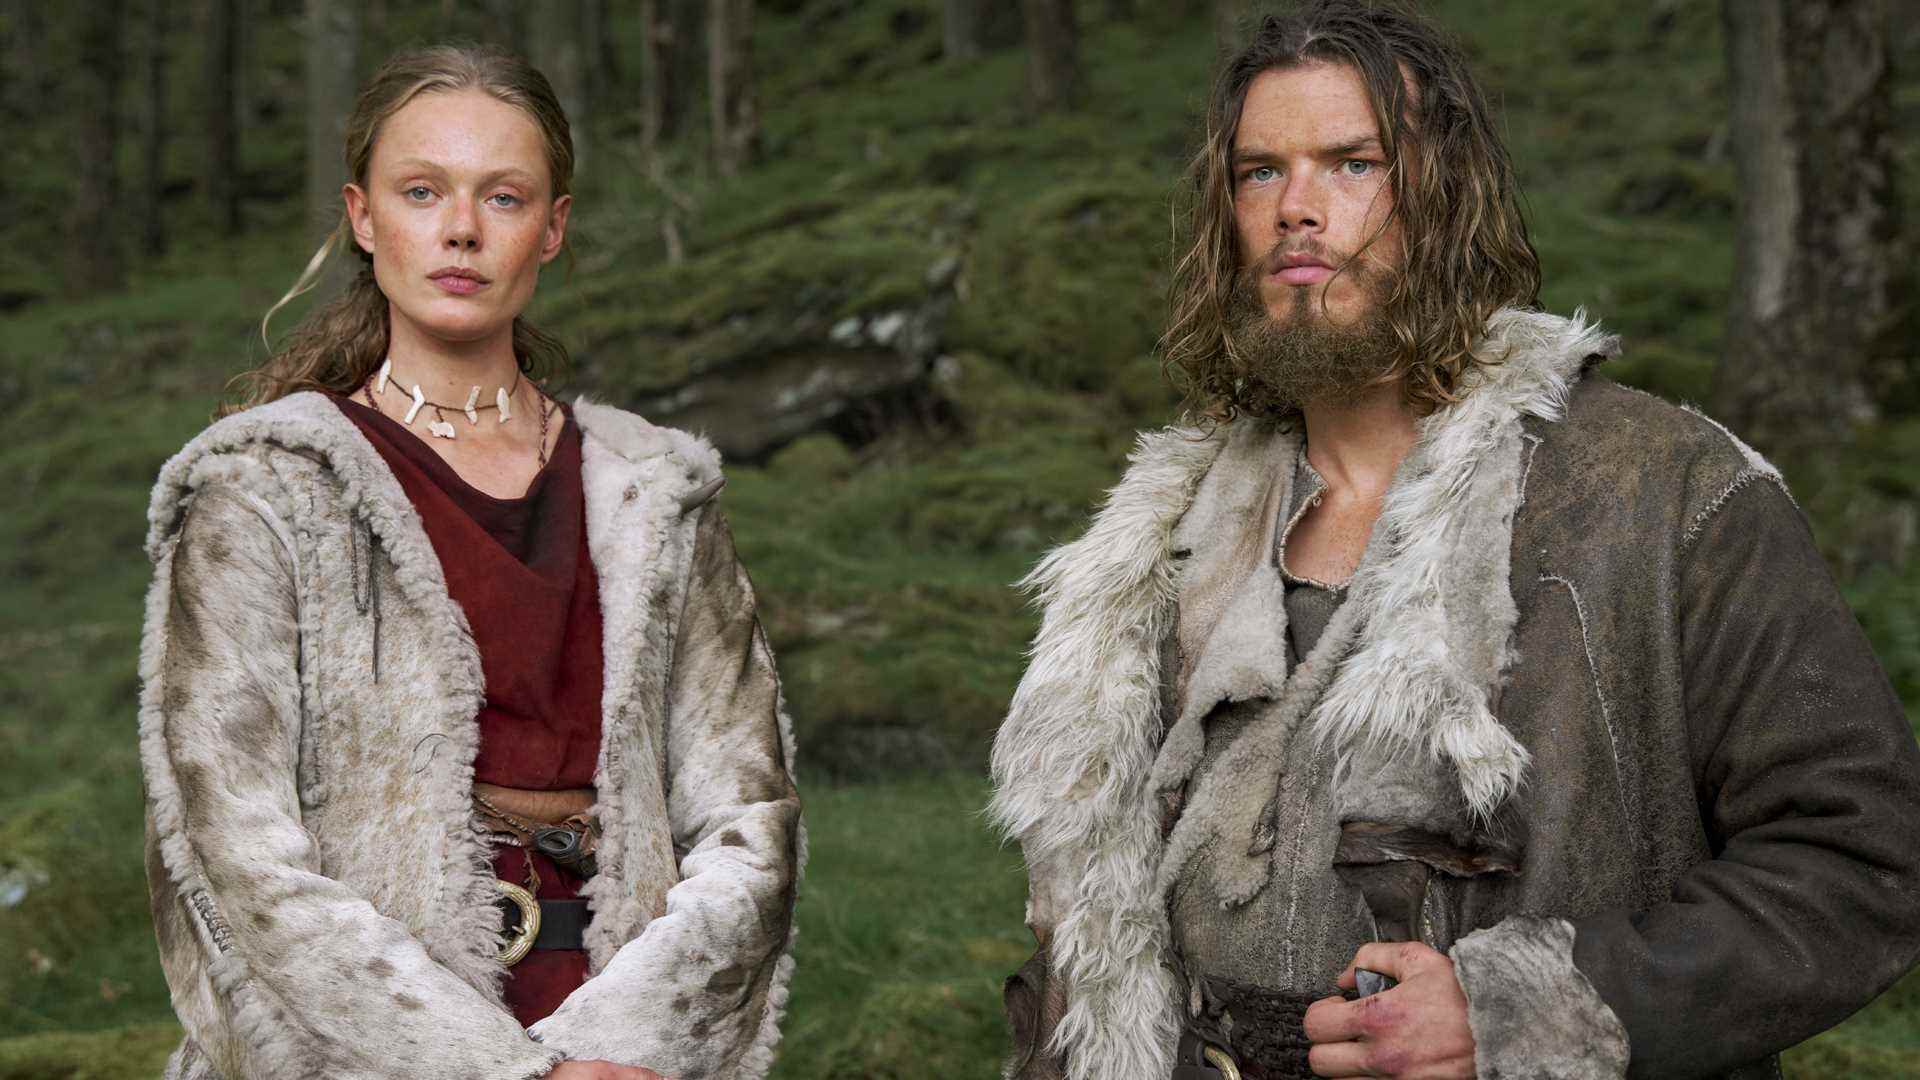 Netflix'te Vikings Valhalla'da Leif Eriksson ve Freydis Eiriksdottir